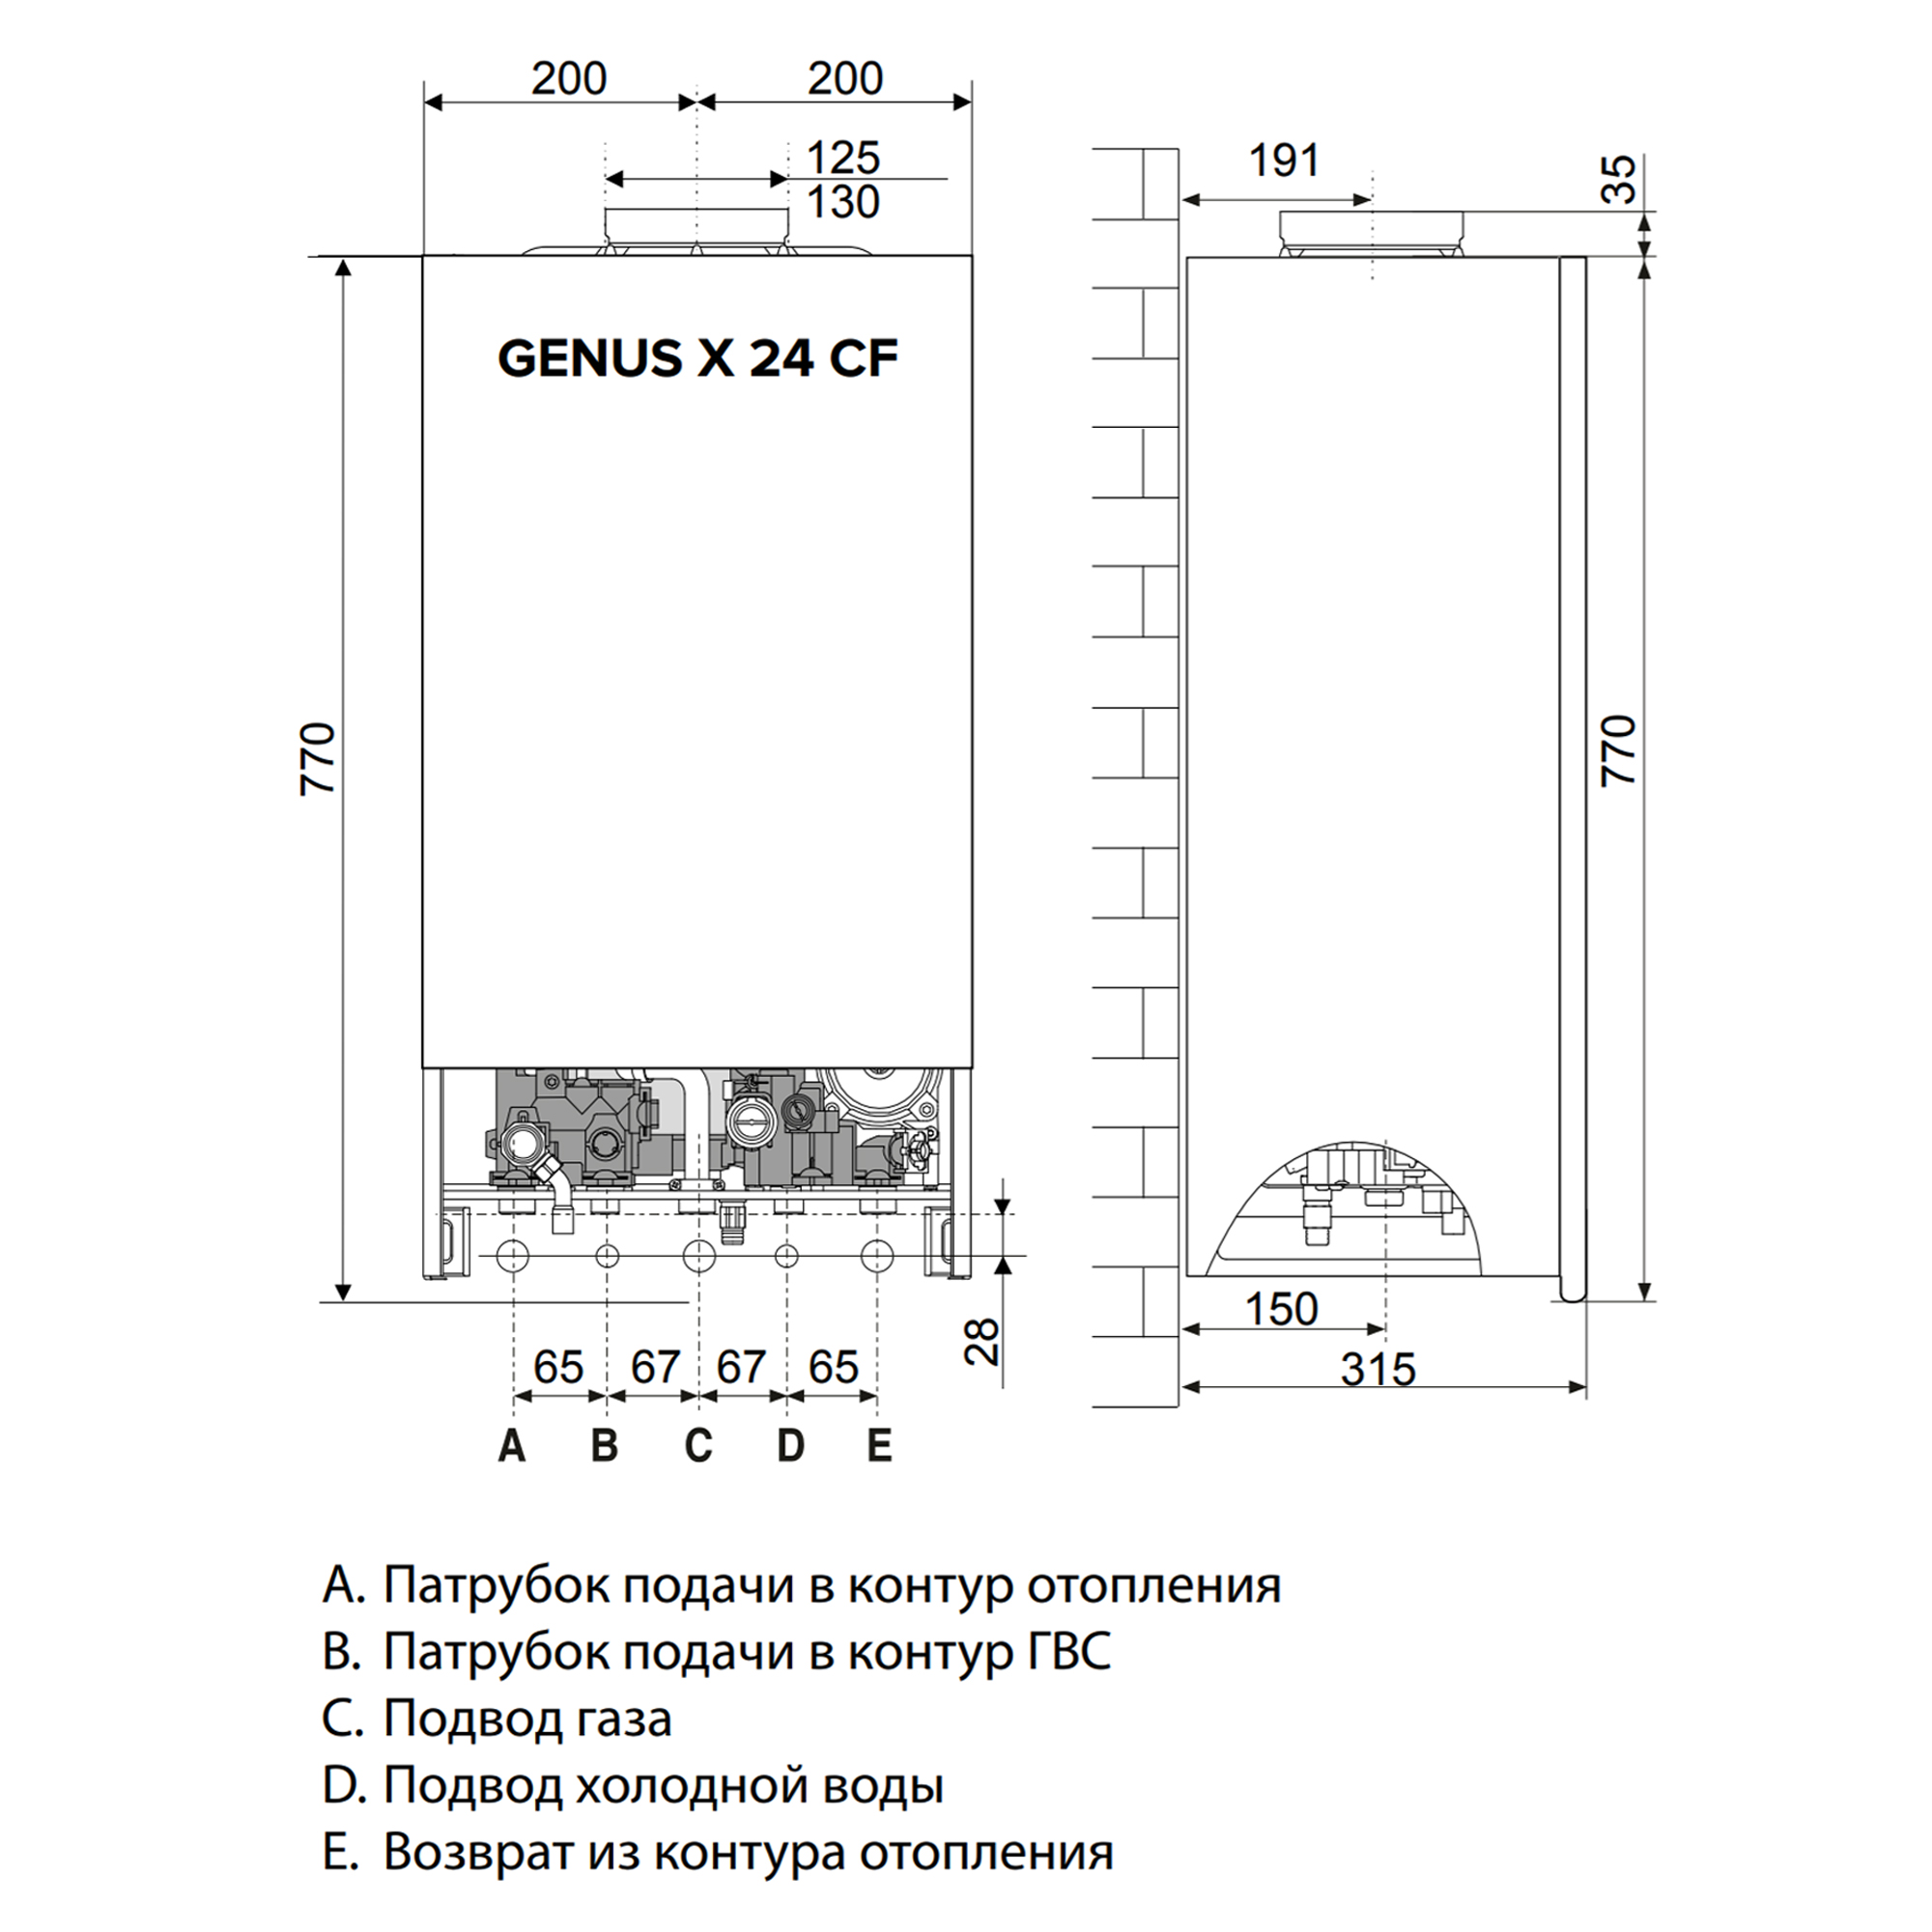 Газовый котел Ariston Genus X 24 CF NG инструкция - изображение 6